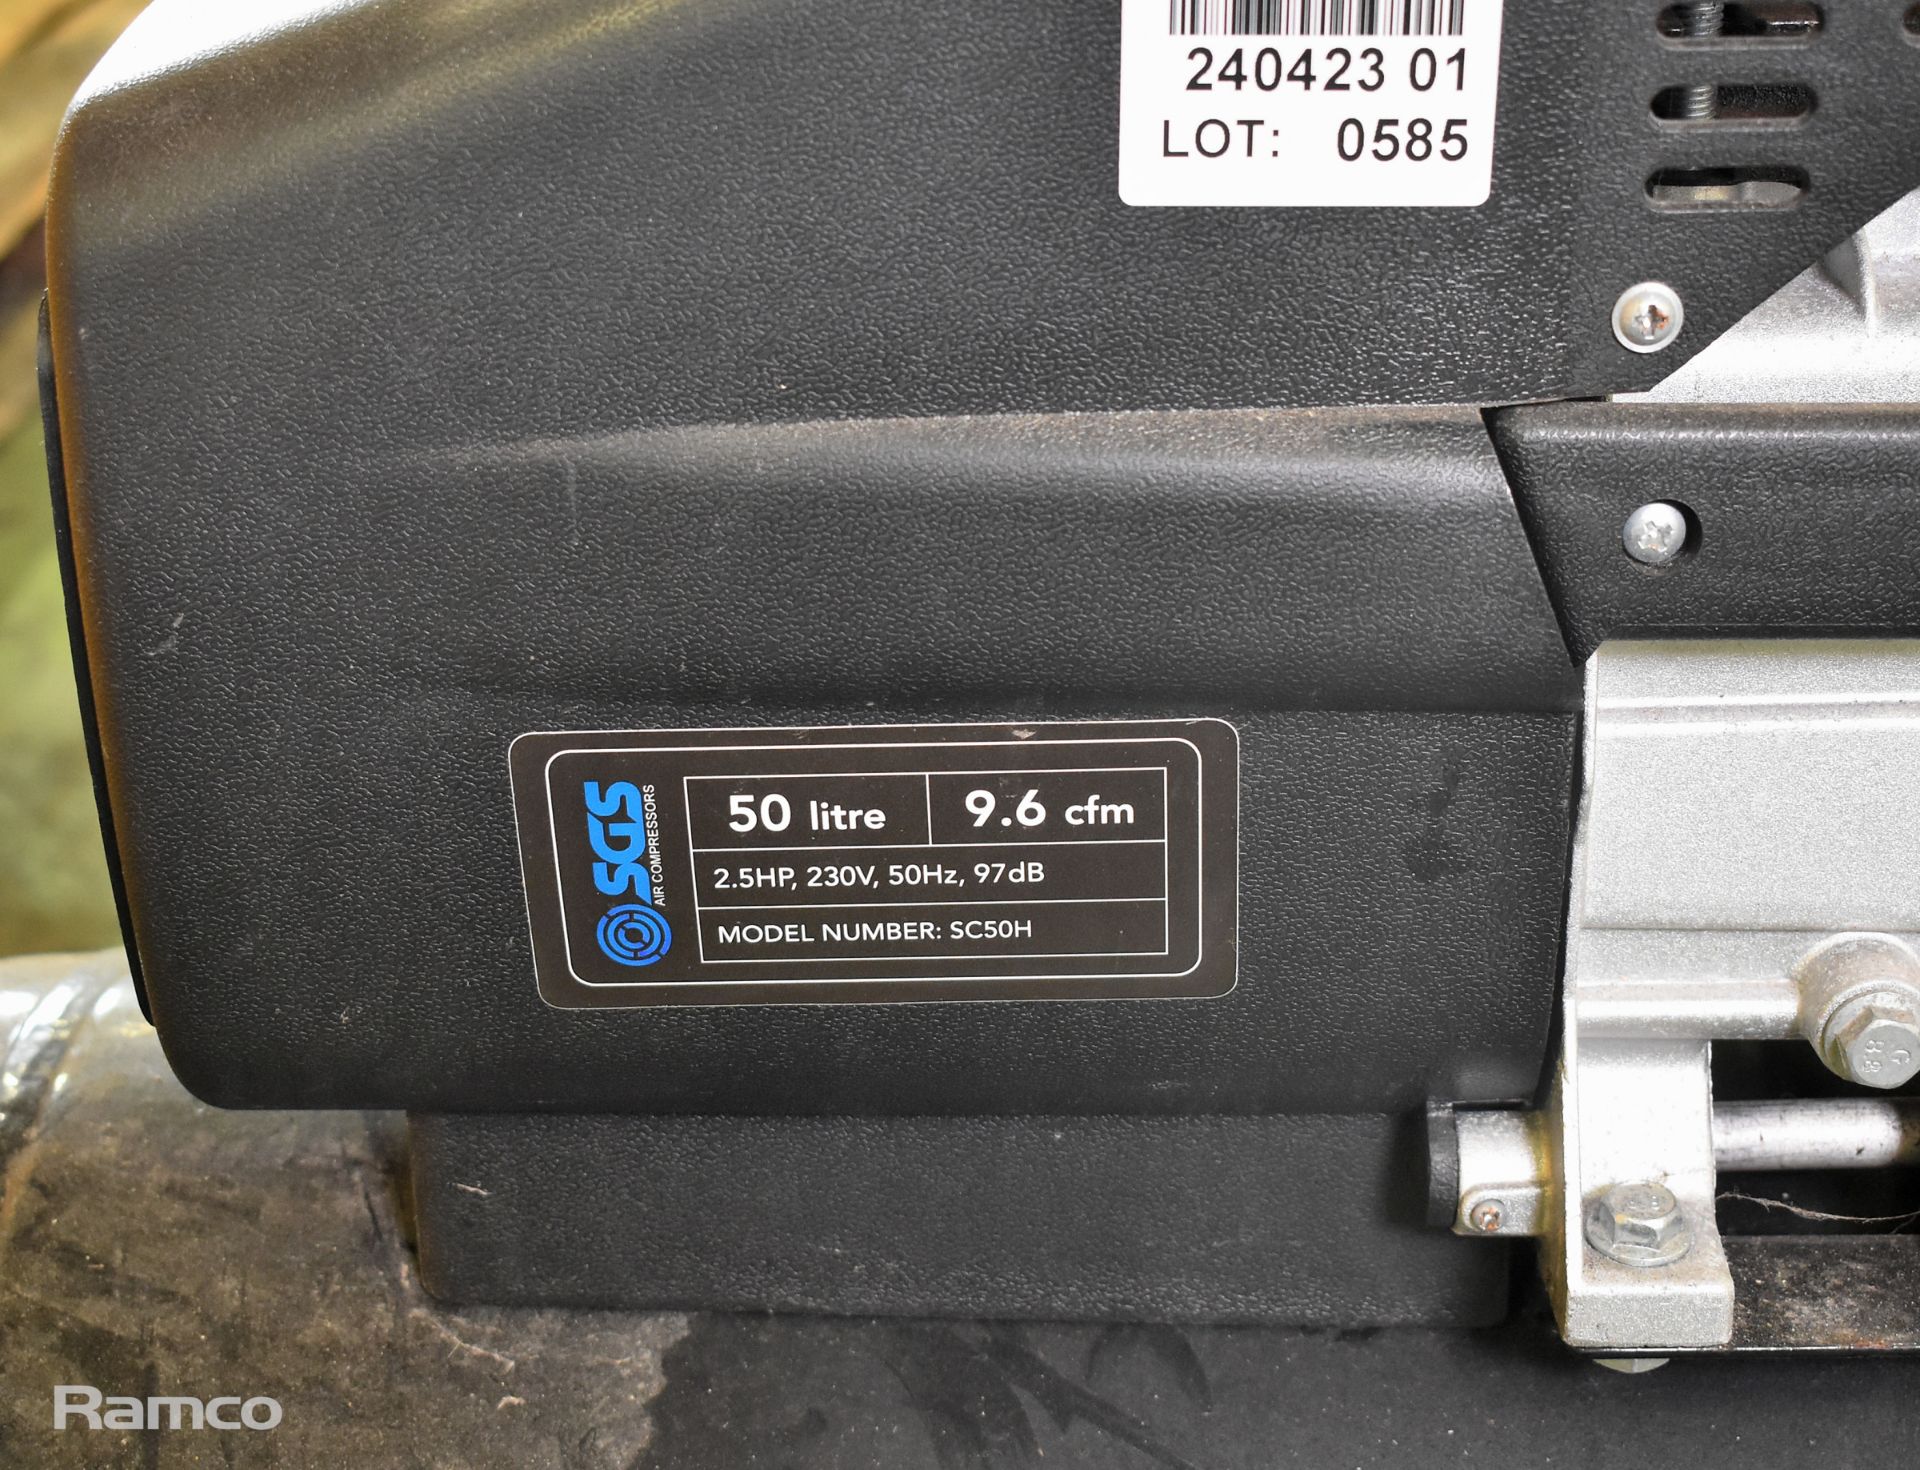 SGS SC50H 2.5hp dual nozzle air compressor 50 ltr - 230V - Image 2 of 5